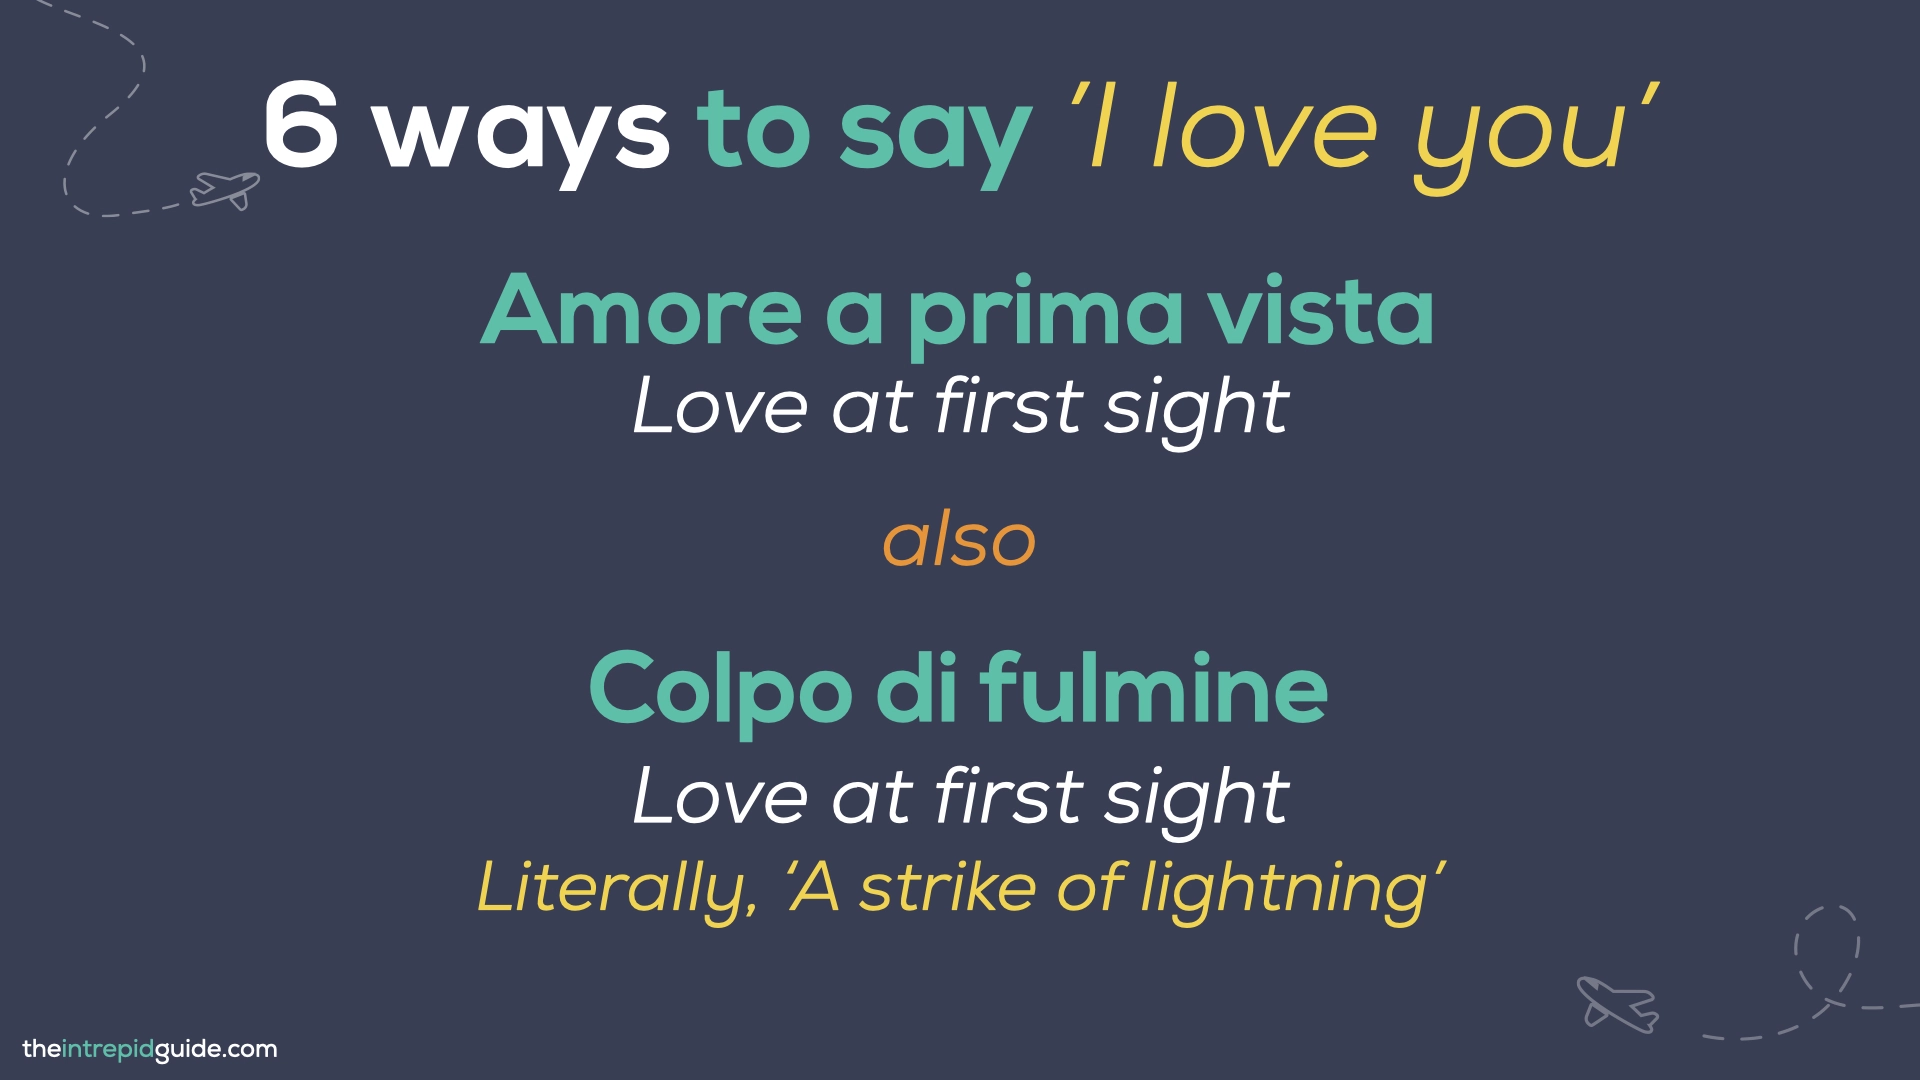 How to say 'I love you' in Italian - Amore a prima vista : Colpo di fulmine